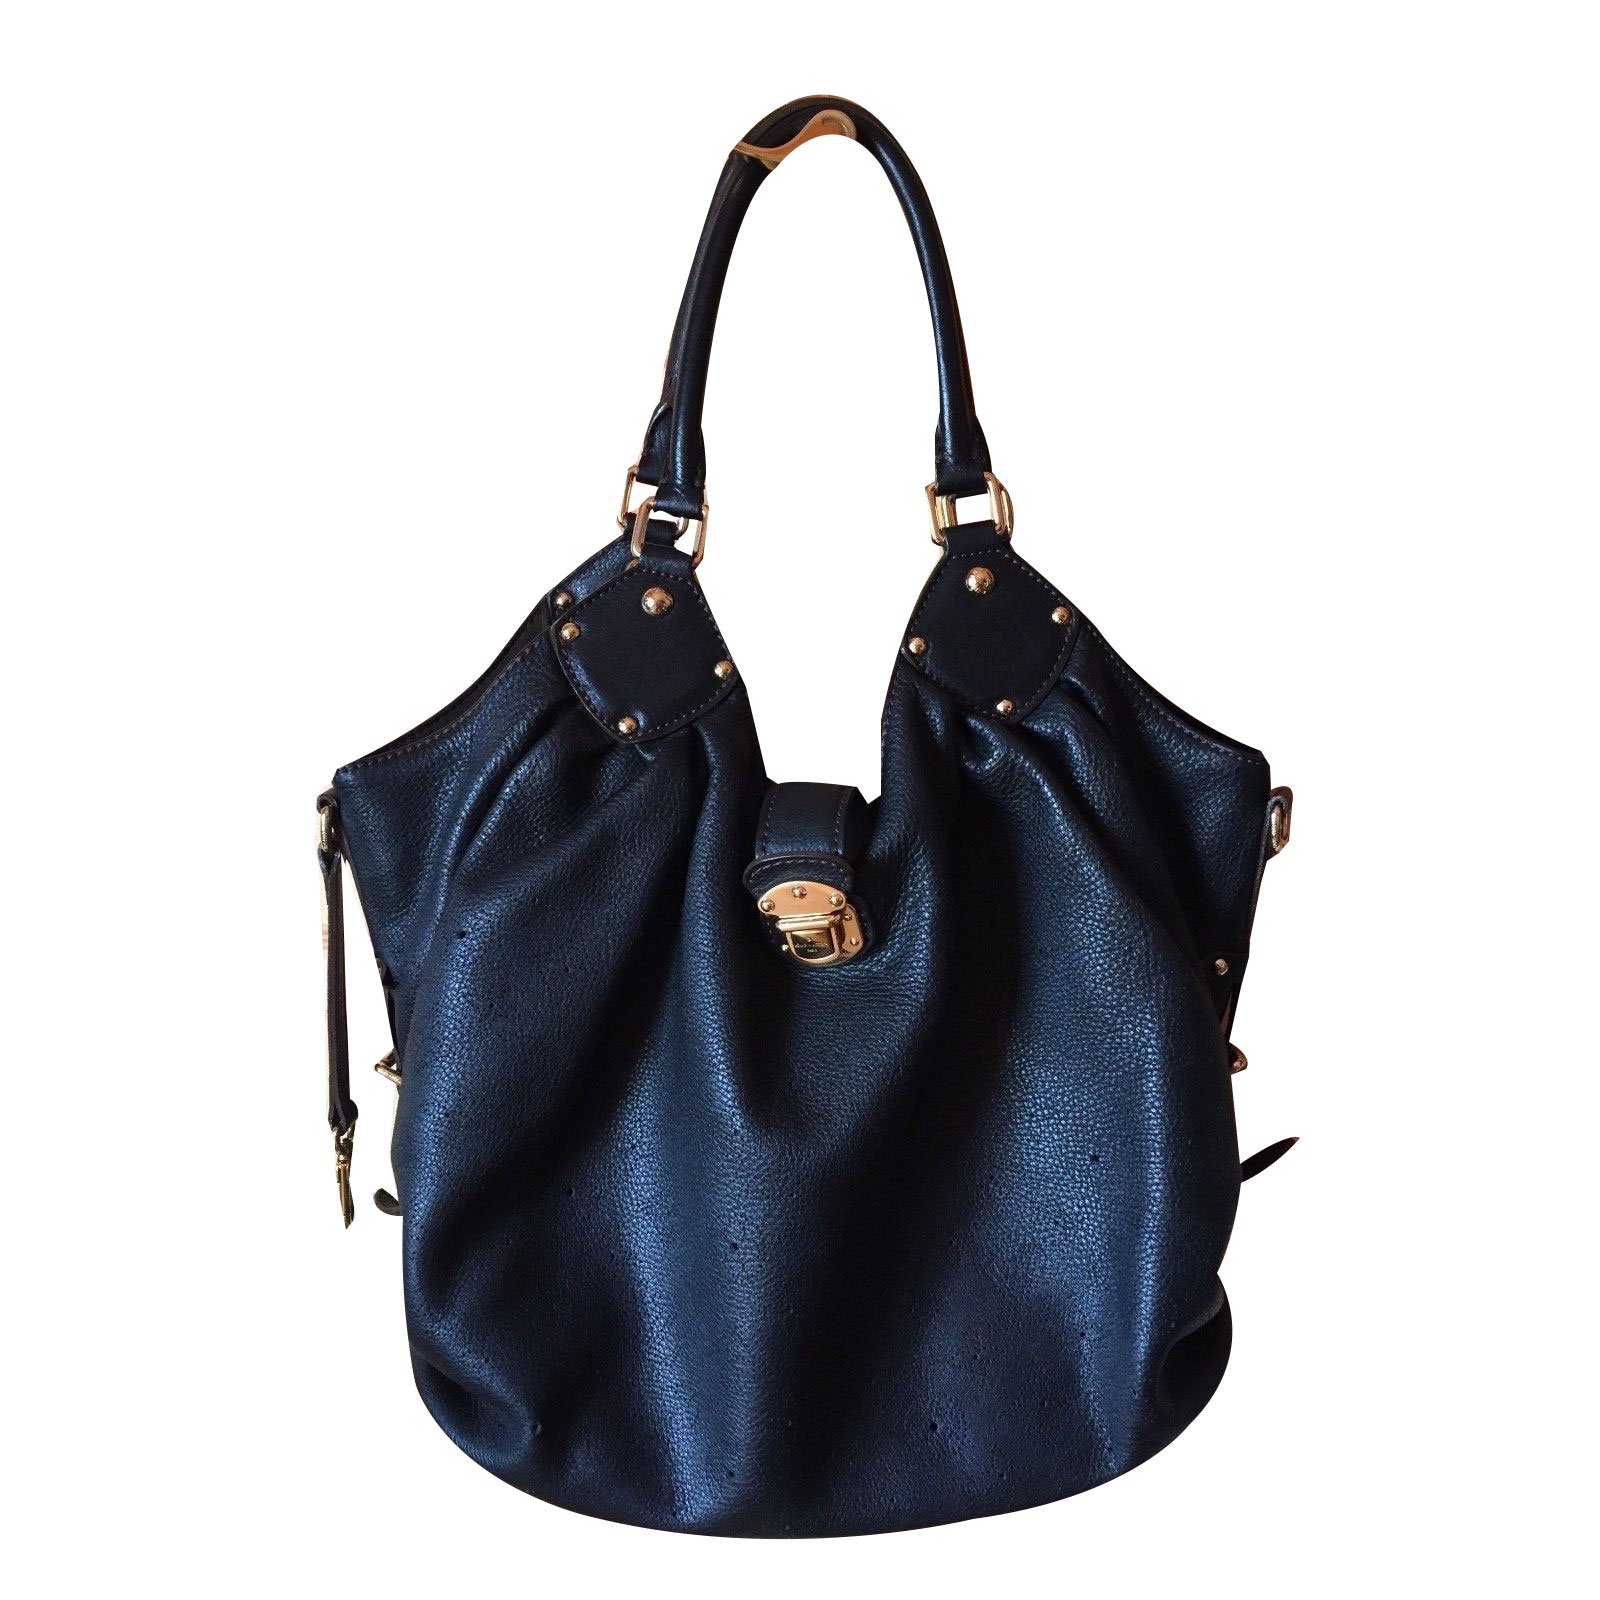 BLACK LOUIS VUITTON XL MAHINA BAG PURSE Handbag. Excellent Condition